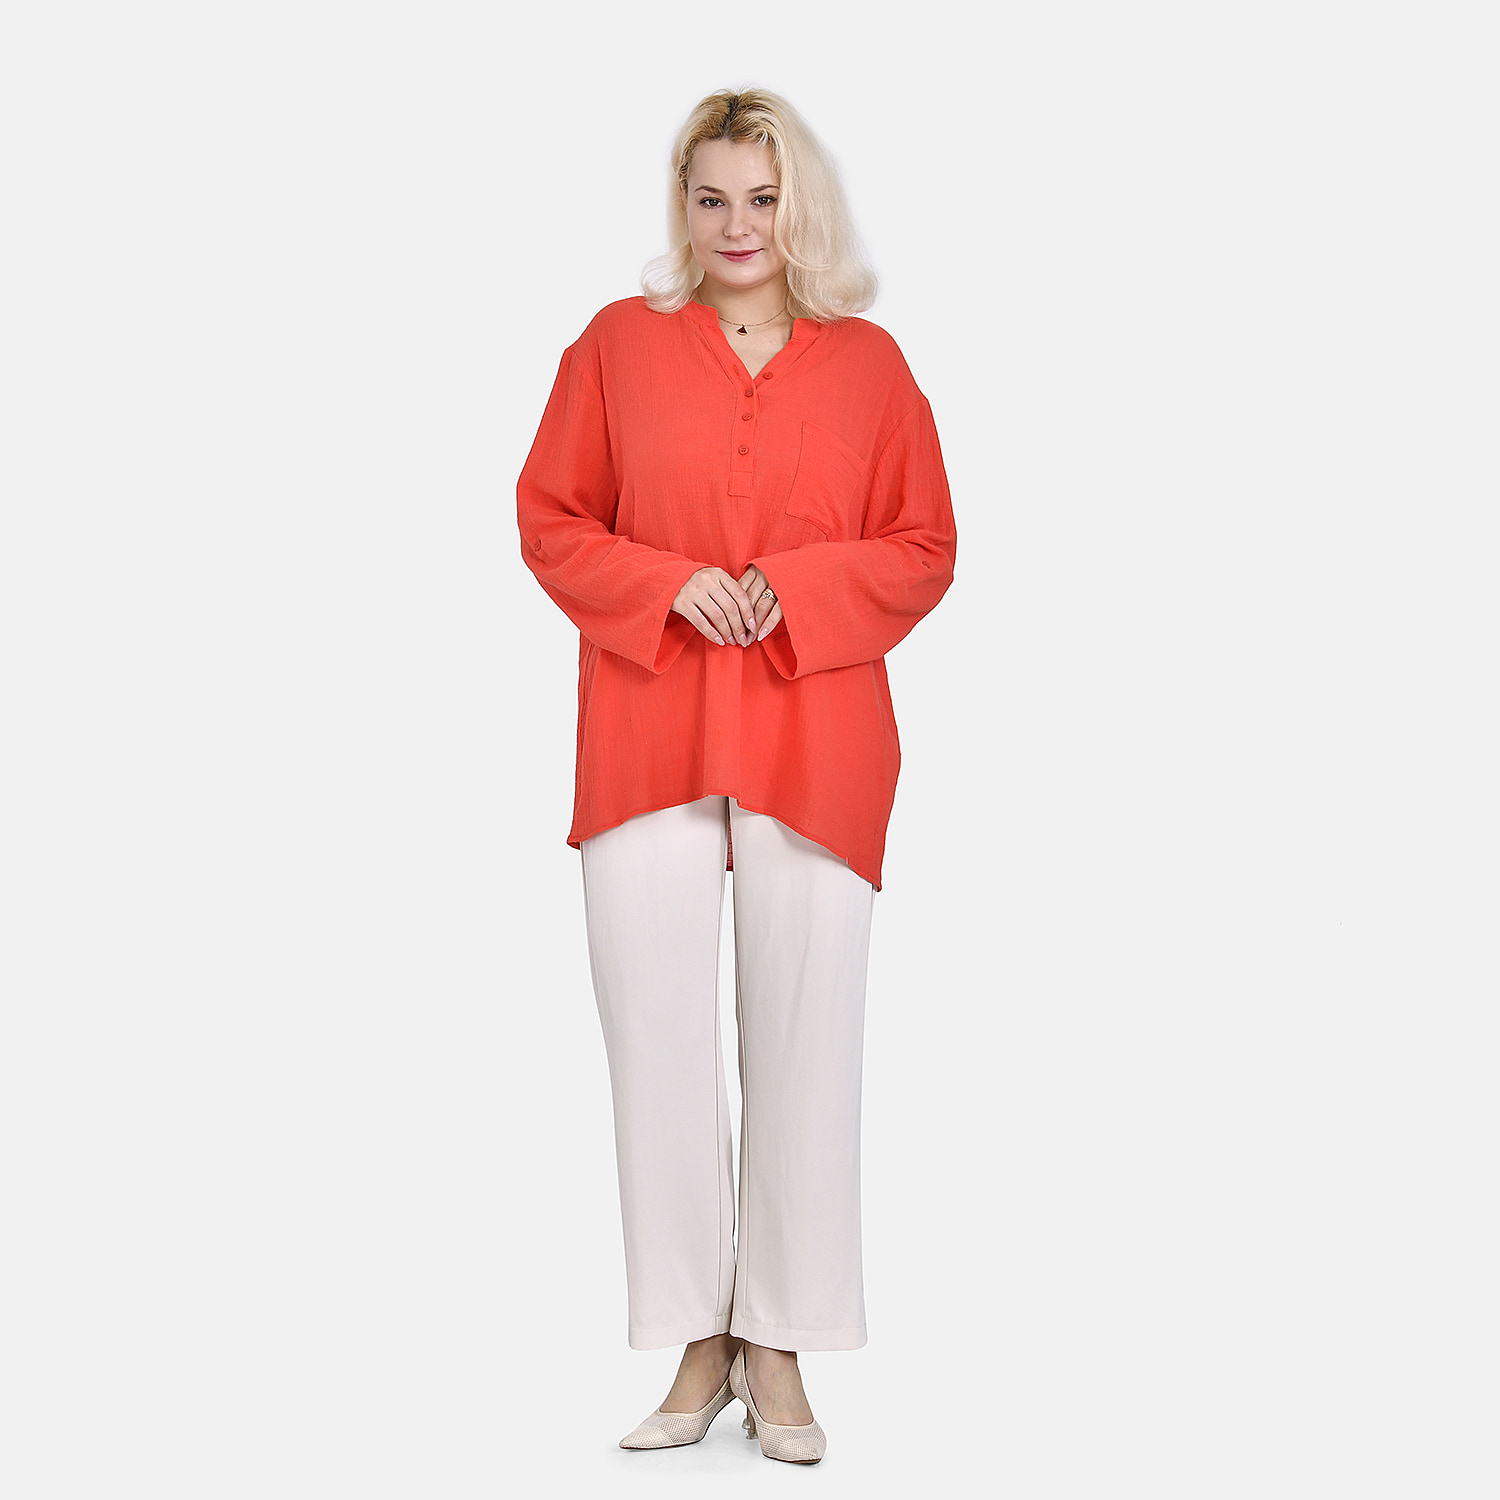 La Marey Cotton Blend 3-4 Sleeve Button Down Blouse (Size S) - Orange